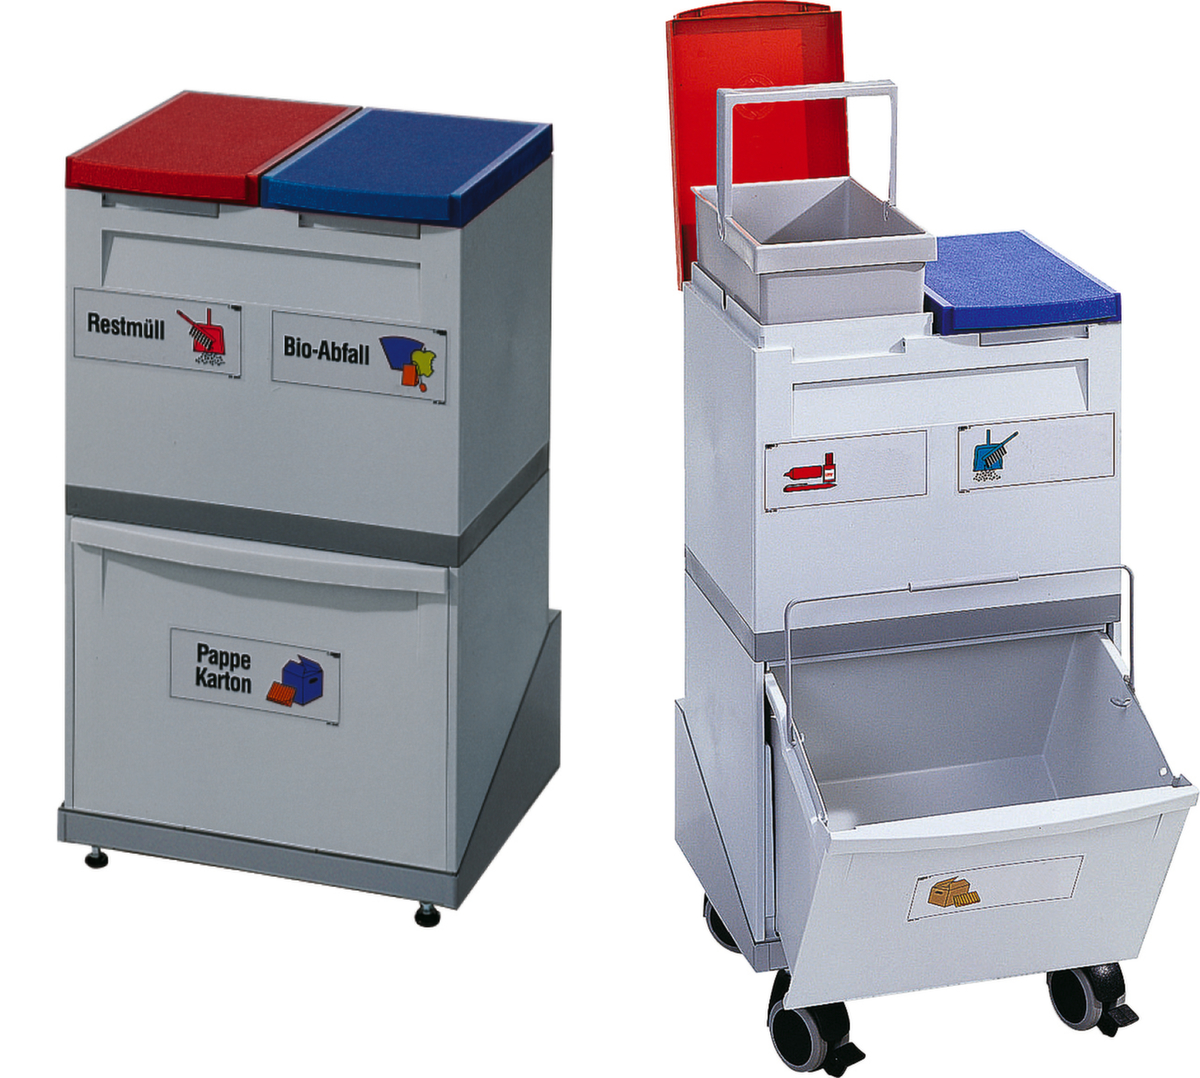 Station de collecte de matières recyclables avec 3 unités collectrices  ZOOM